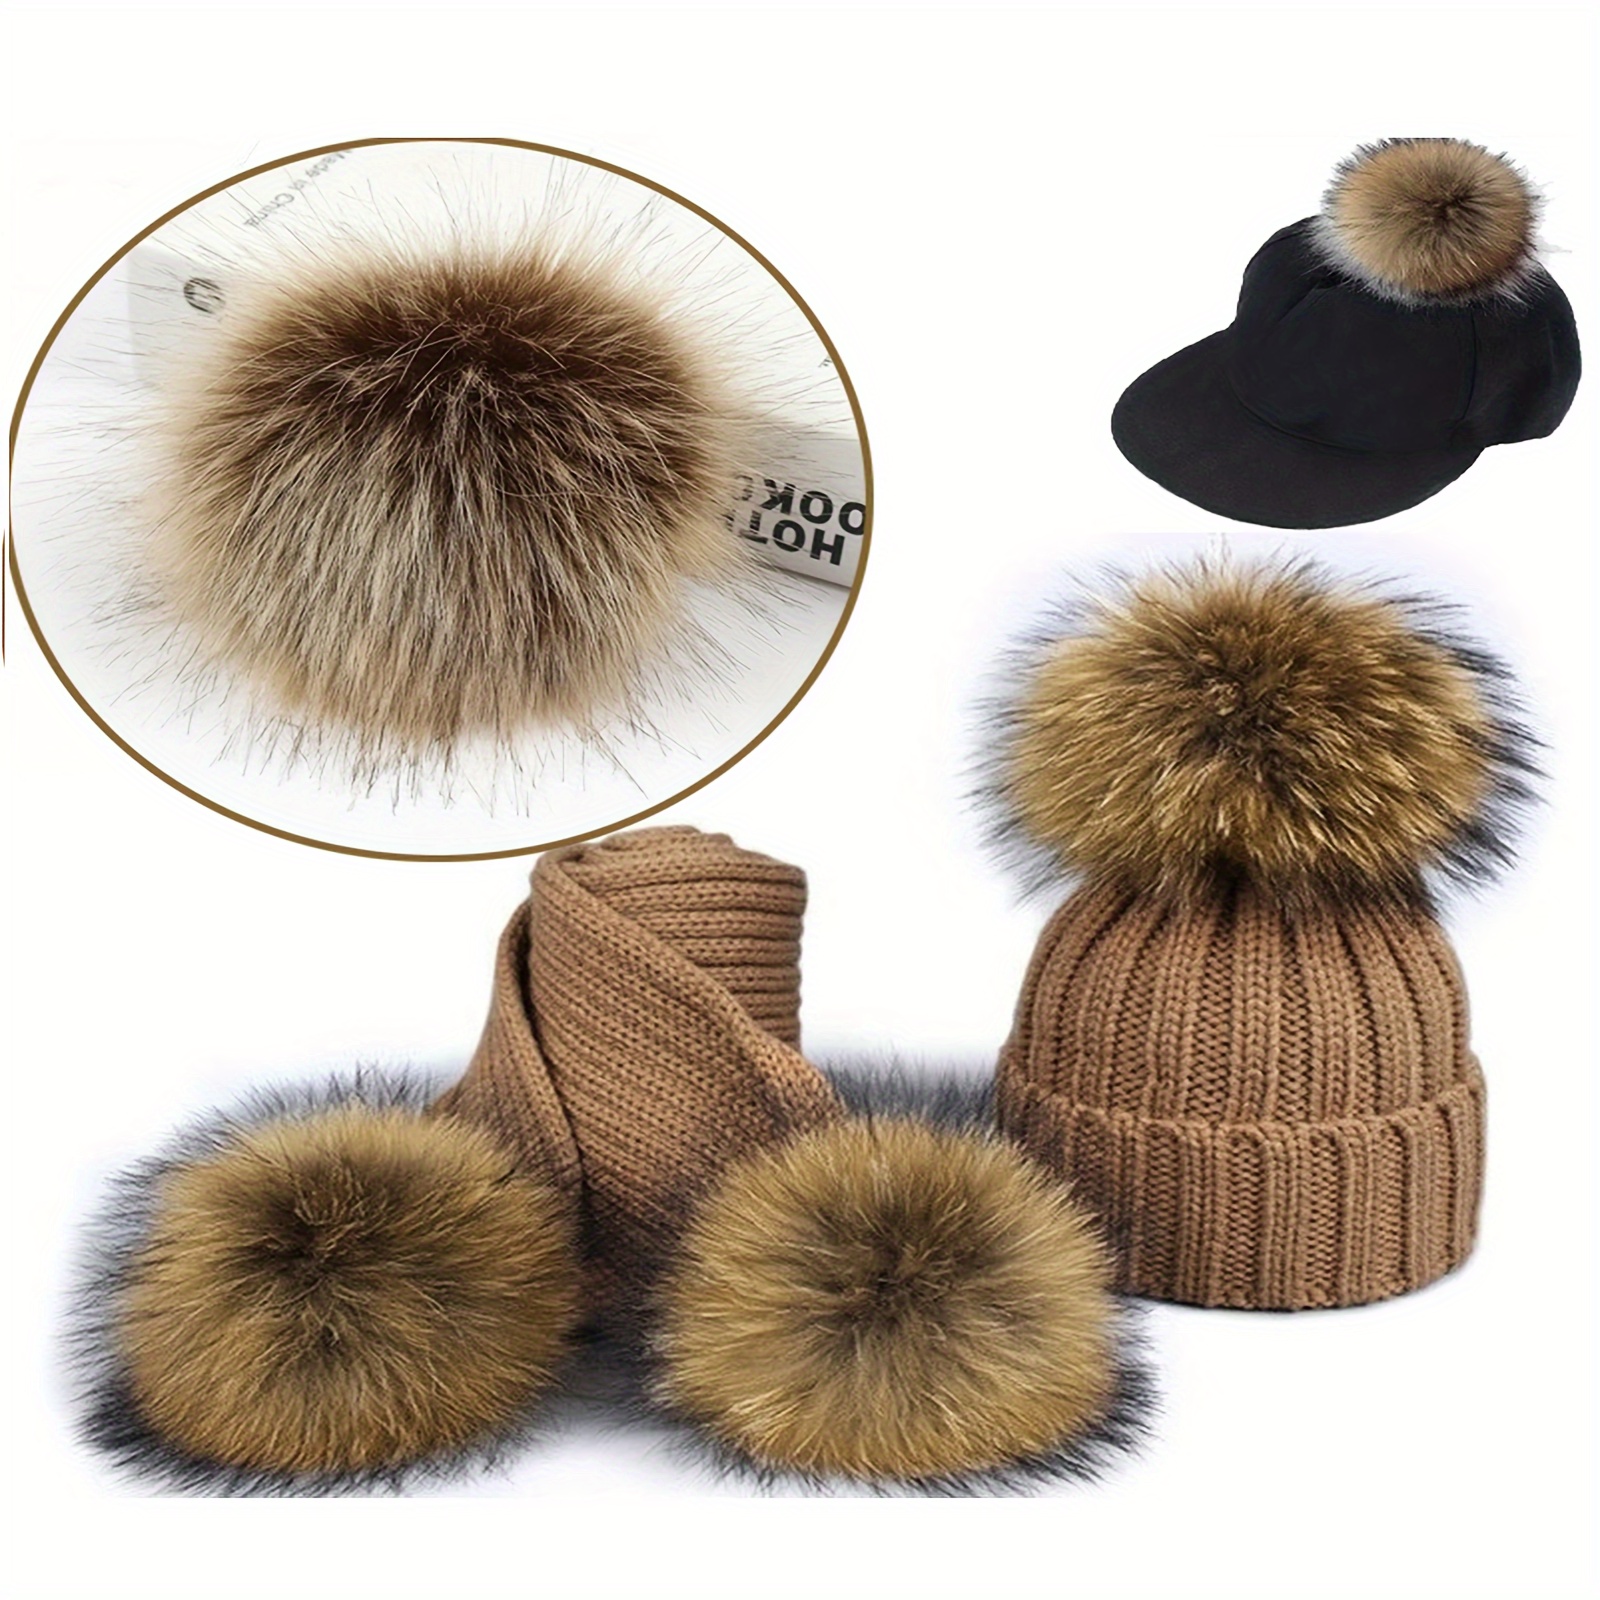 

12pcs/set 3.94" Imitation Faux Fur Pom Poms For Beanies 3 Colors Diy Hat Accessories Beanie Decorations For Women Girls